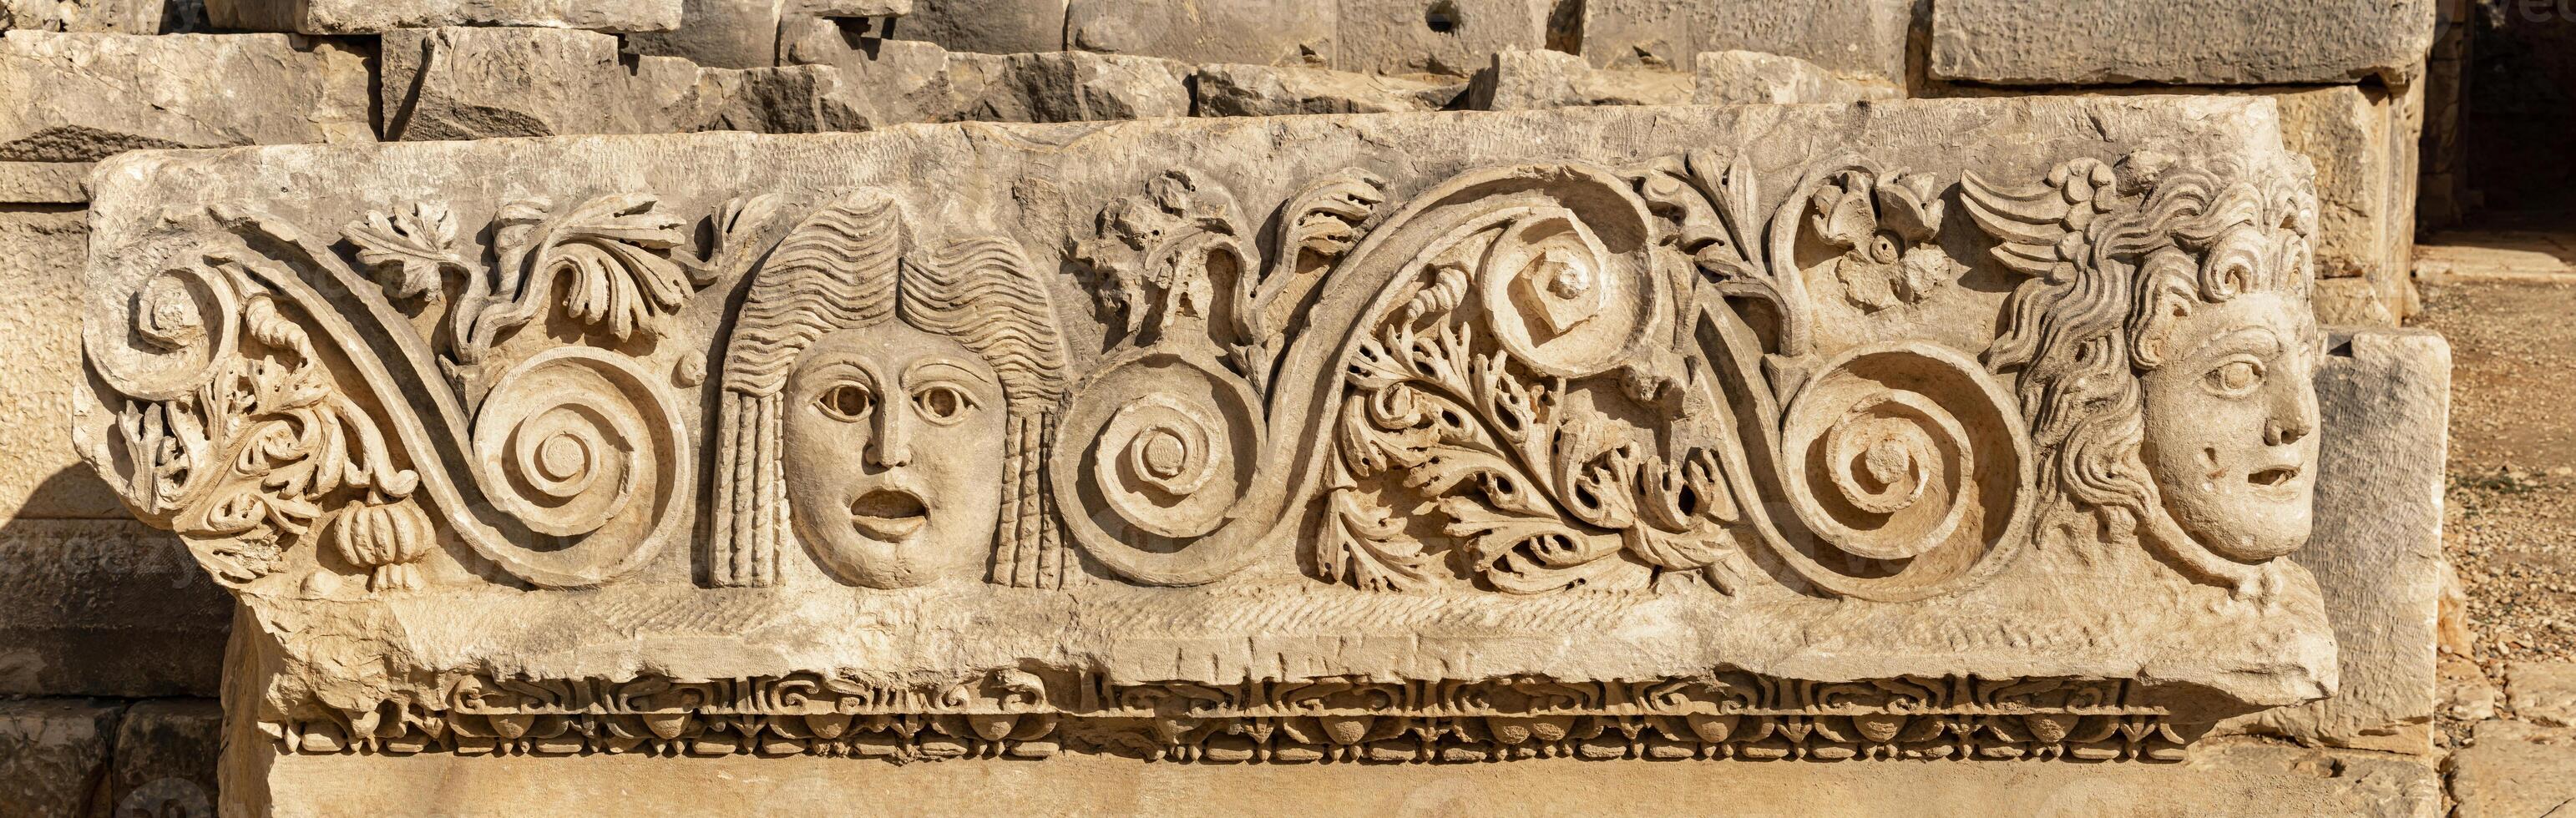 antiguo friso con tallado en piedra caras en el restos de el antiguo ciudad de mira, Turquía foto